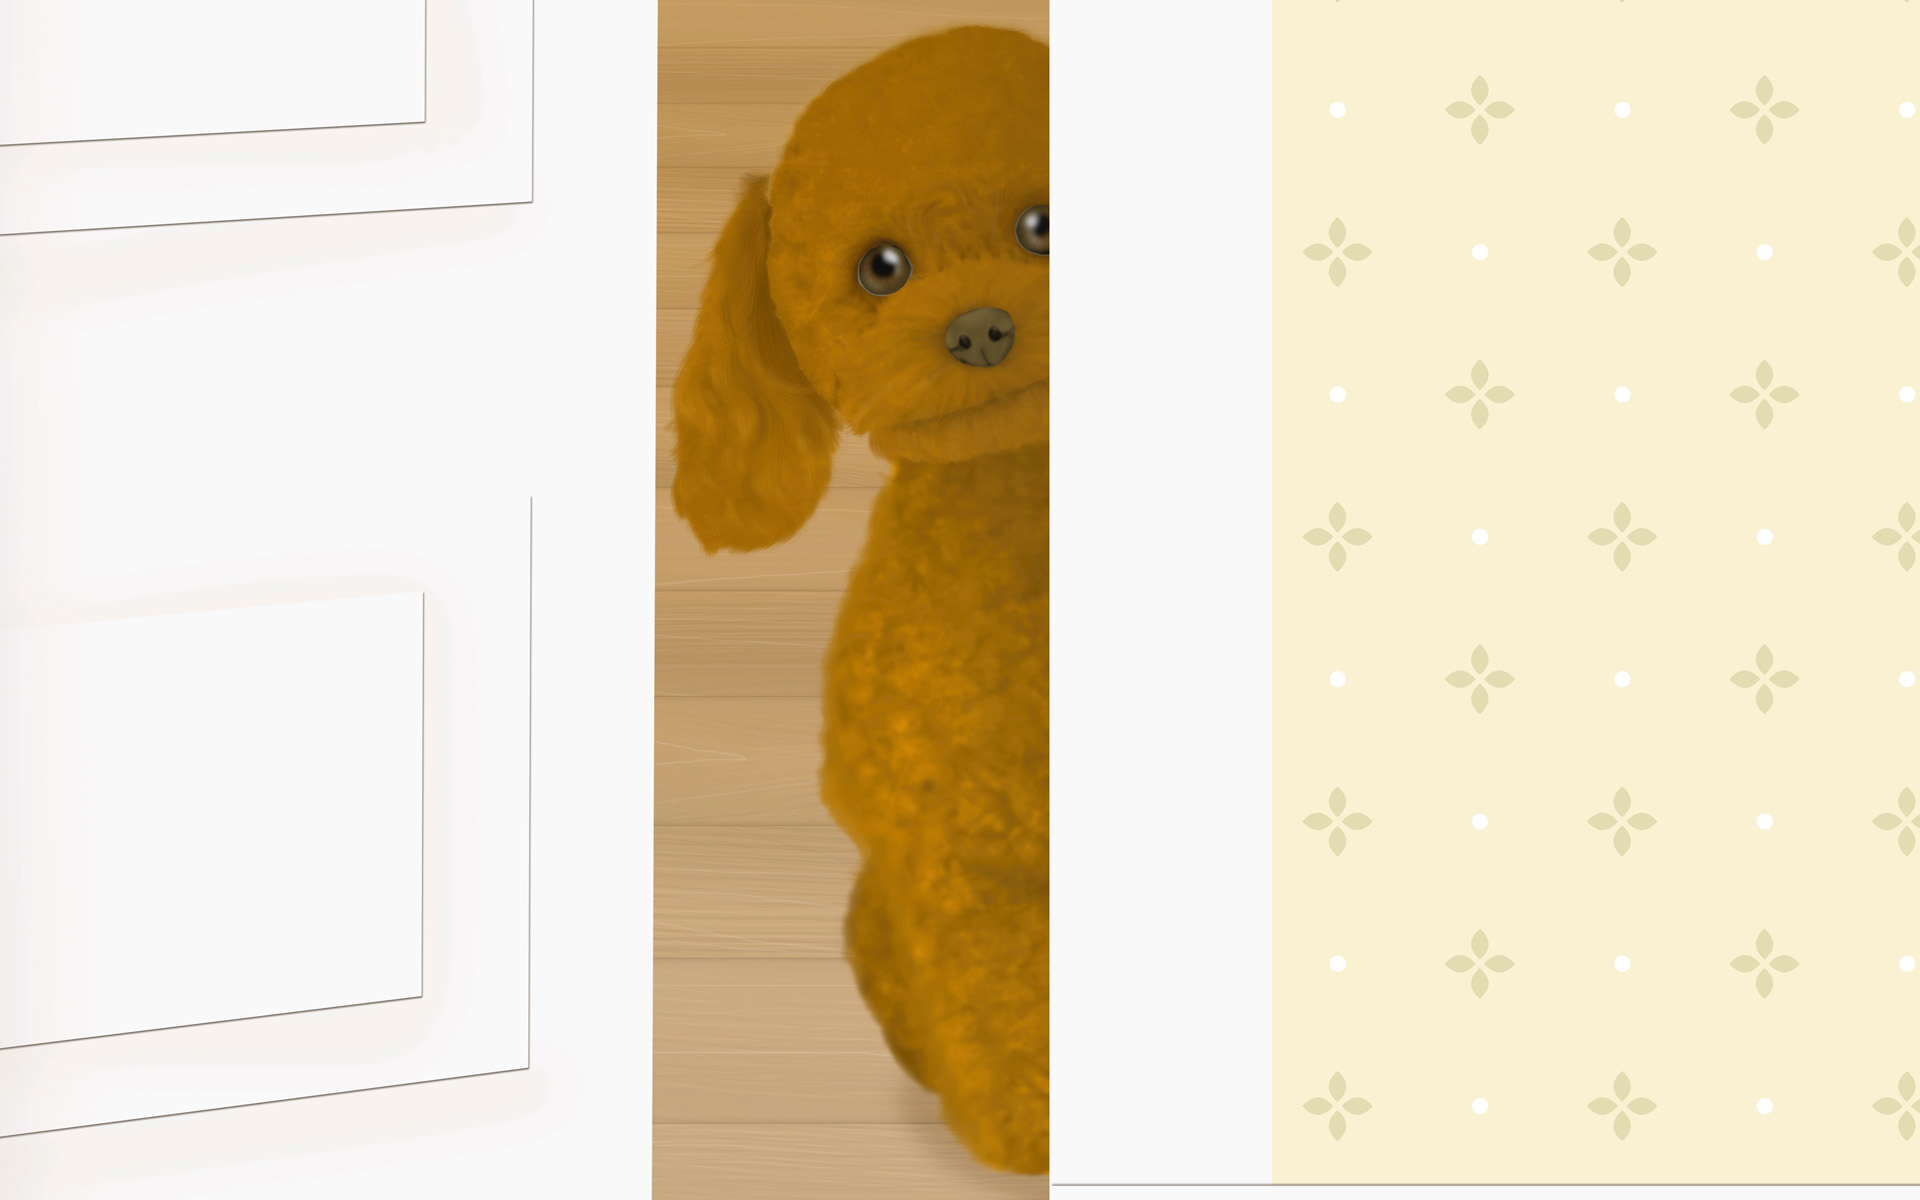 壁纸1920x1200 Painter 柔和风格狗狗插画壁纸 Painter 柔和插画-我的宠物狗壁纸 Painter 柔和插画-我的宠物狗图片 Painter 柔和插画-我的宠物狗素材 动物壁纸 动物图库 动物图片素材桌面壁纸